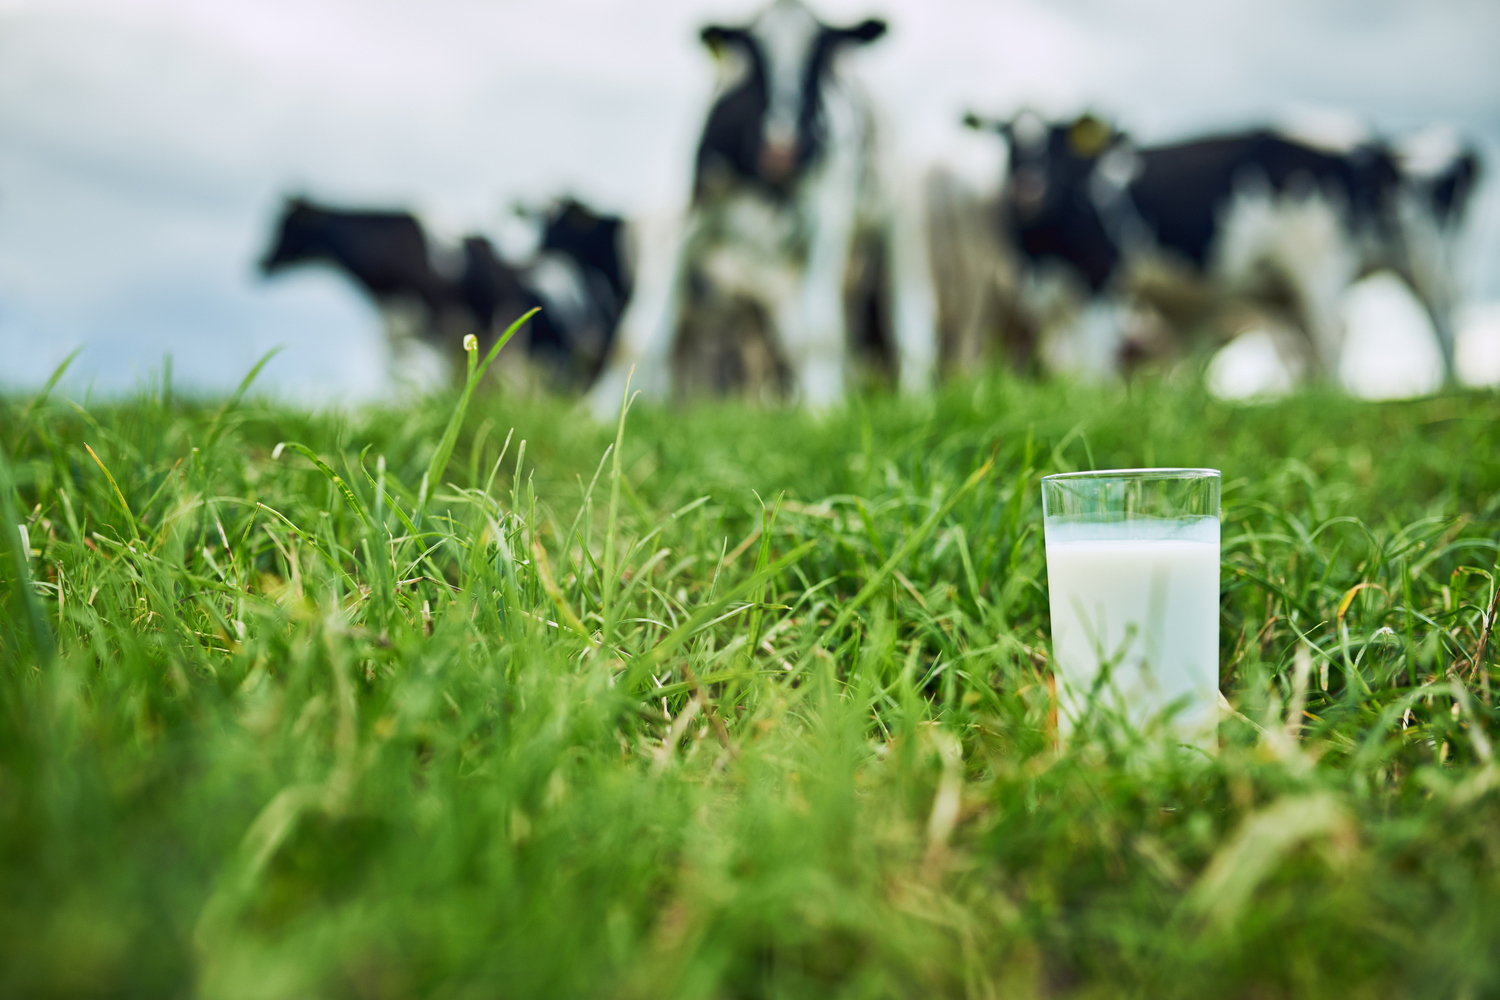 О компании, что производит оборудование для животноводческих комплексов и ферм, где содержатся коровы, которые производят молоко, что мы с Вами пьём